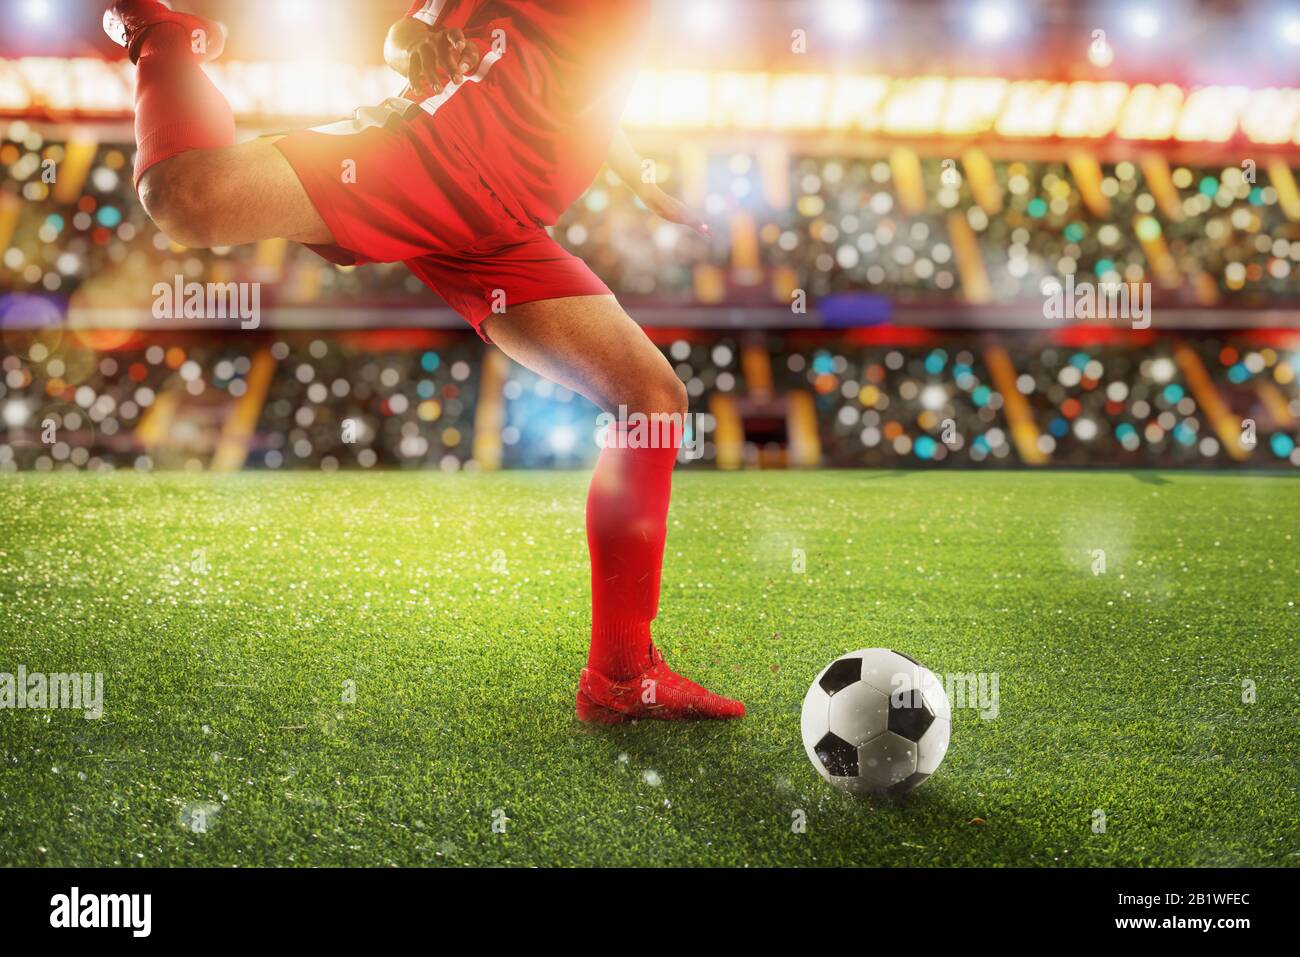 Scène de nuit football match avec player Kicking the ball avec puissance. Banque D'Images